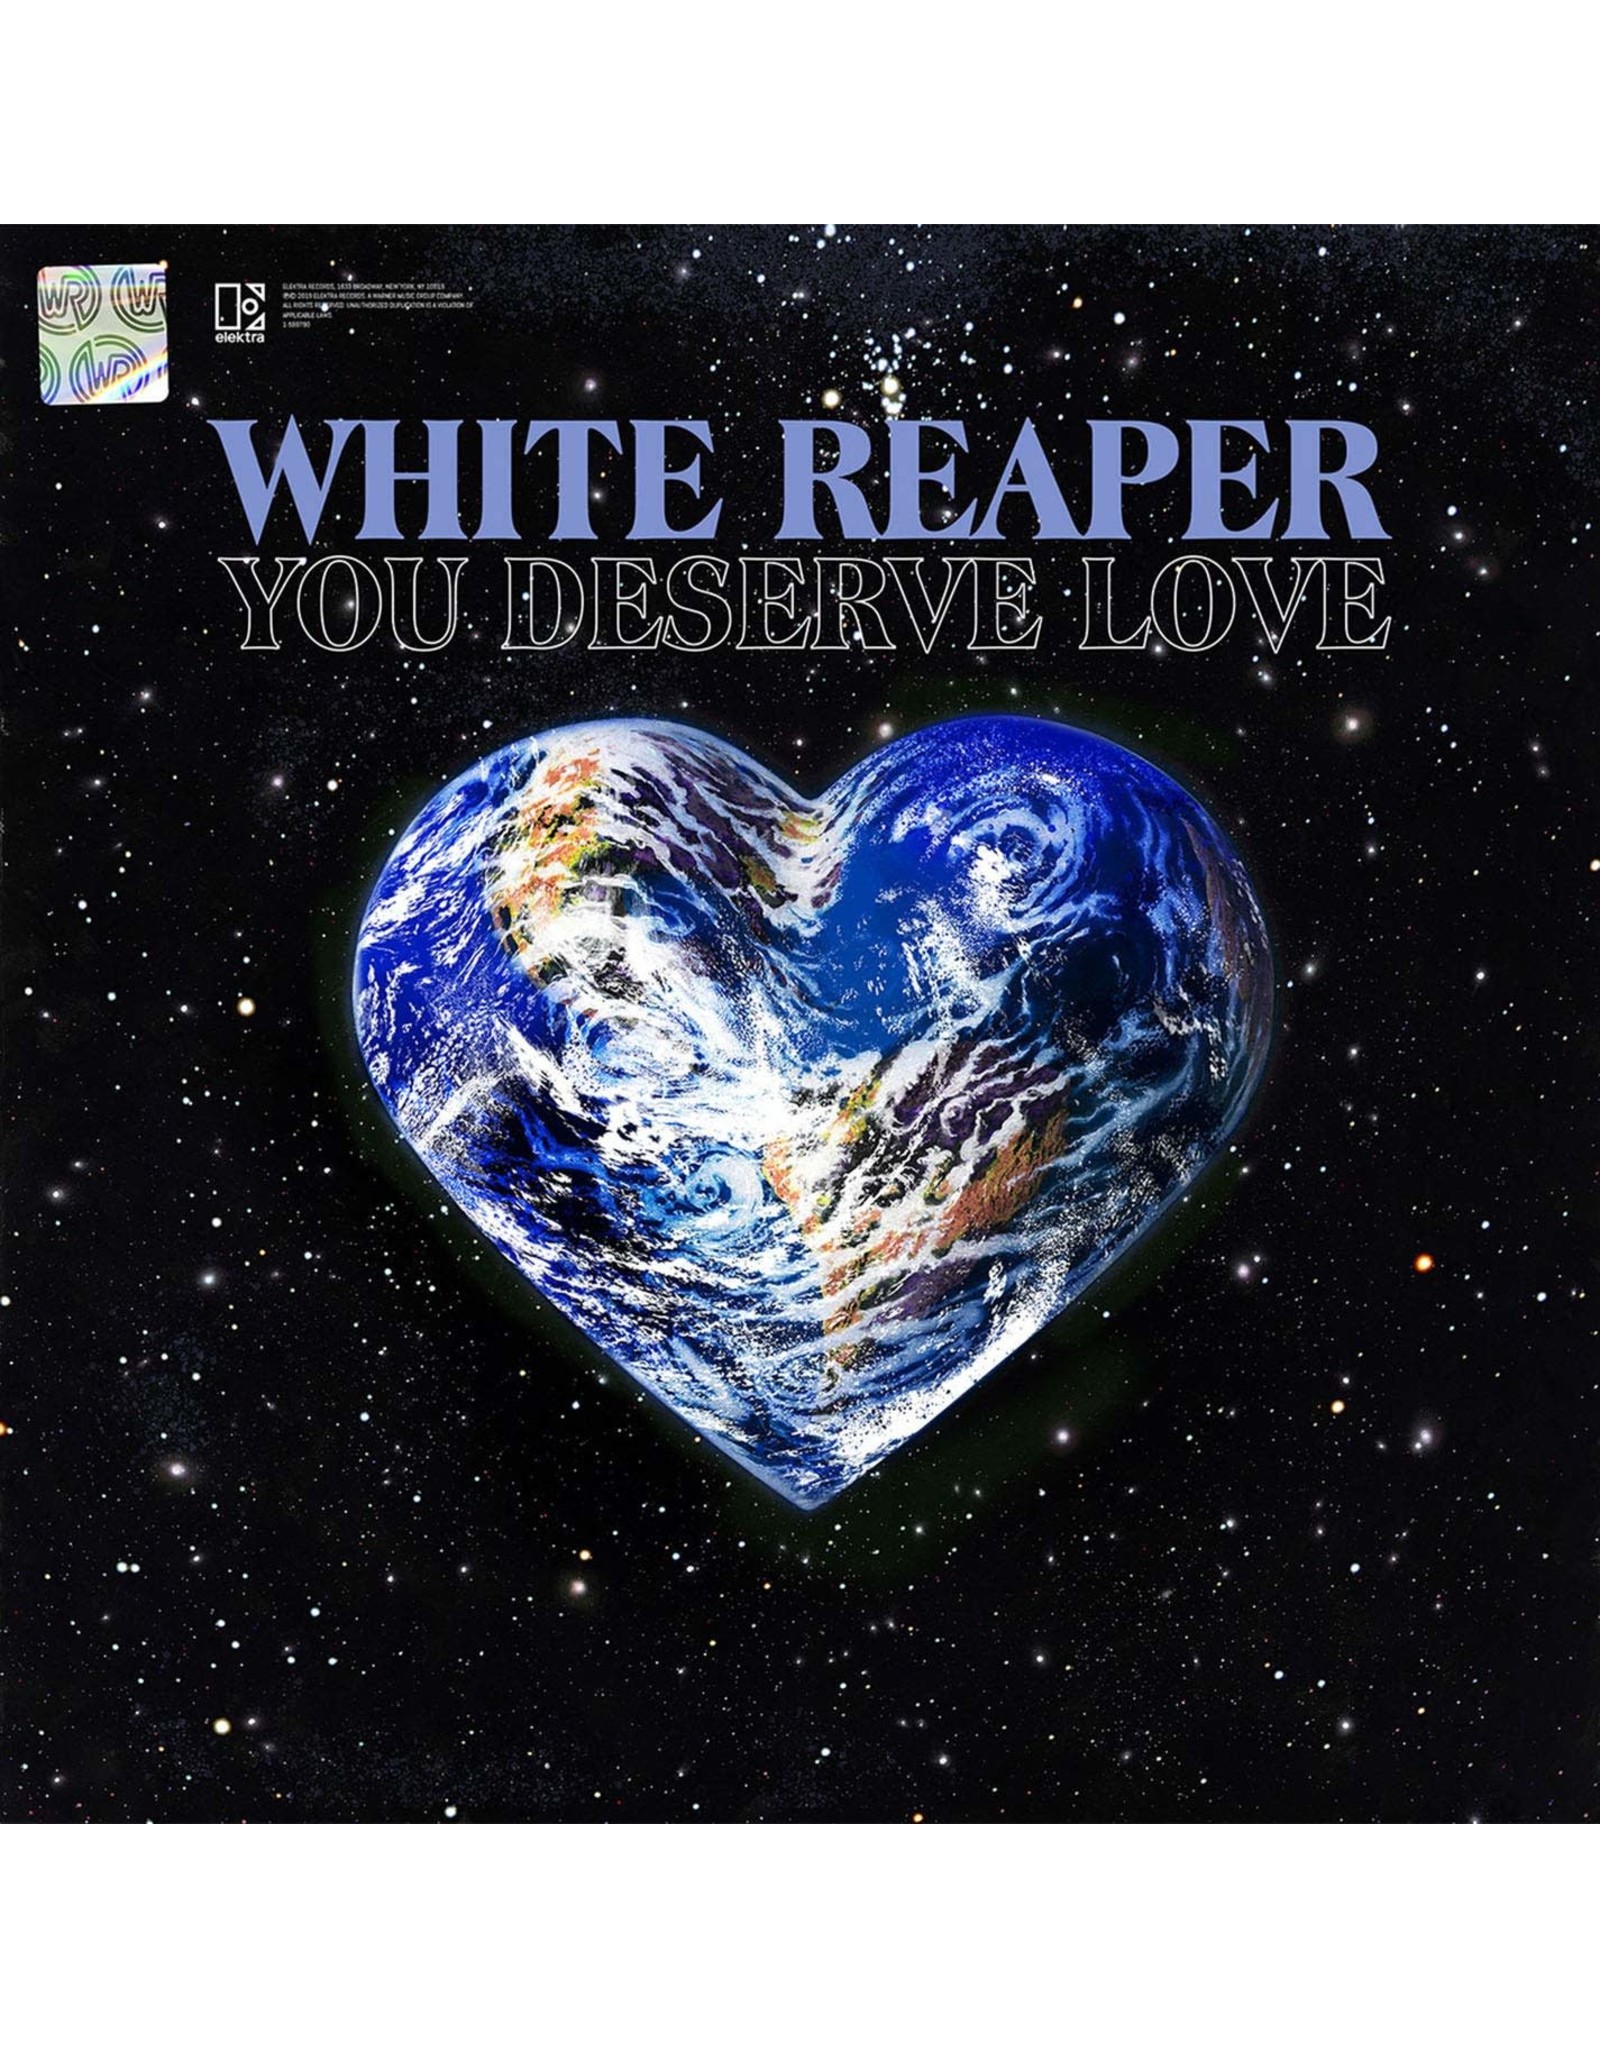 White Reaper - You Deserve Love